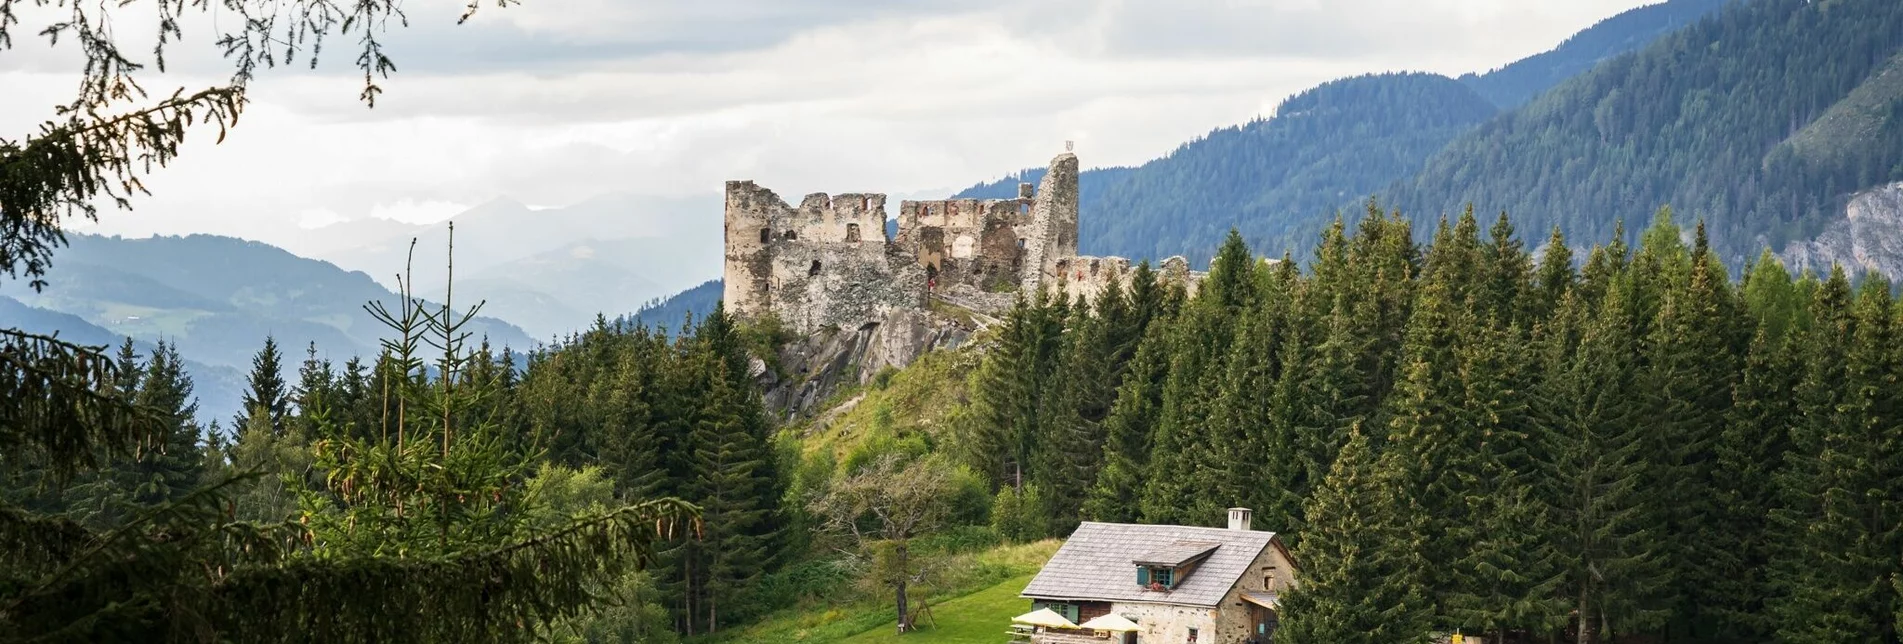 Wanderung Von der "Alten Schmiede" zum Steinschloss - Touren-Impression #1 | © Tourismusverband Murau